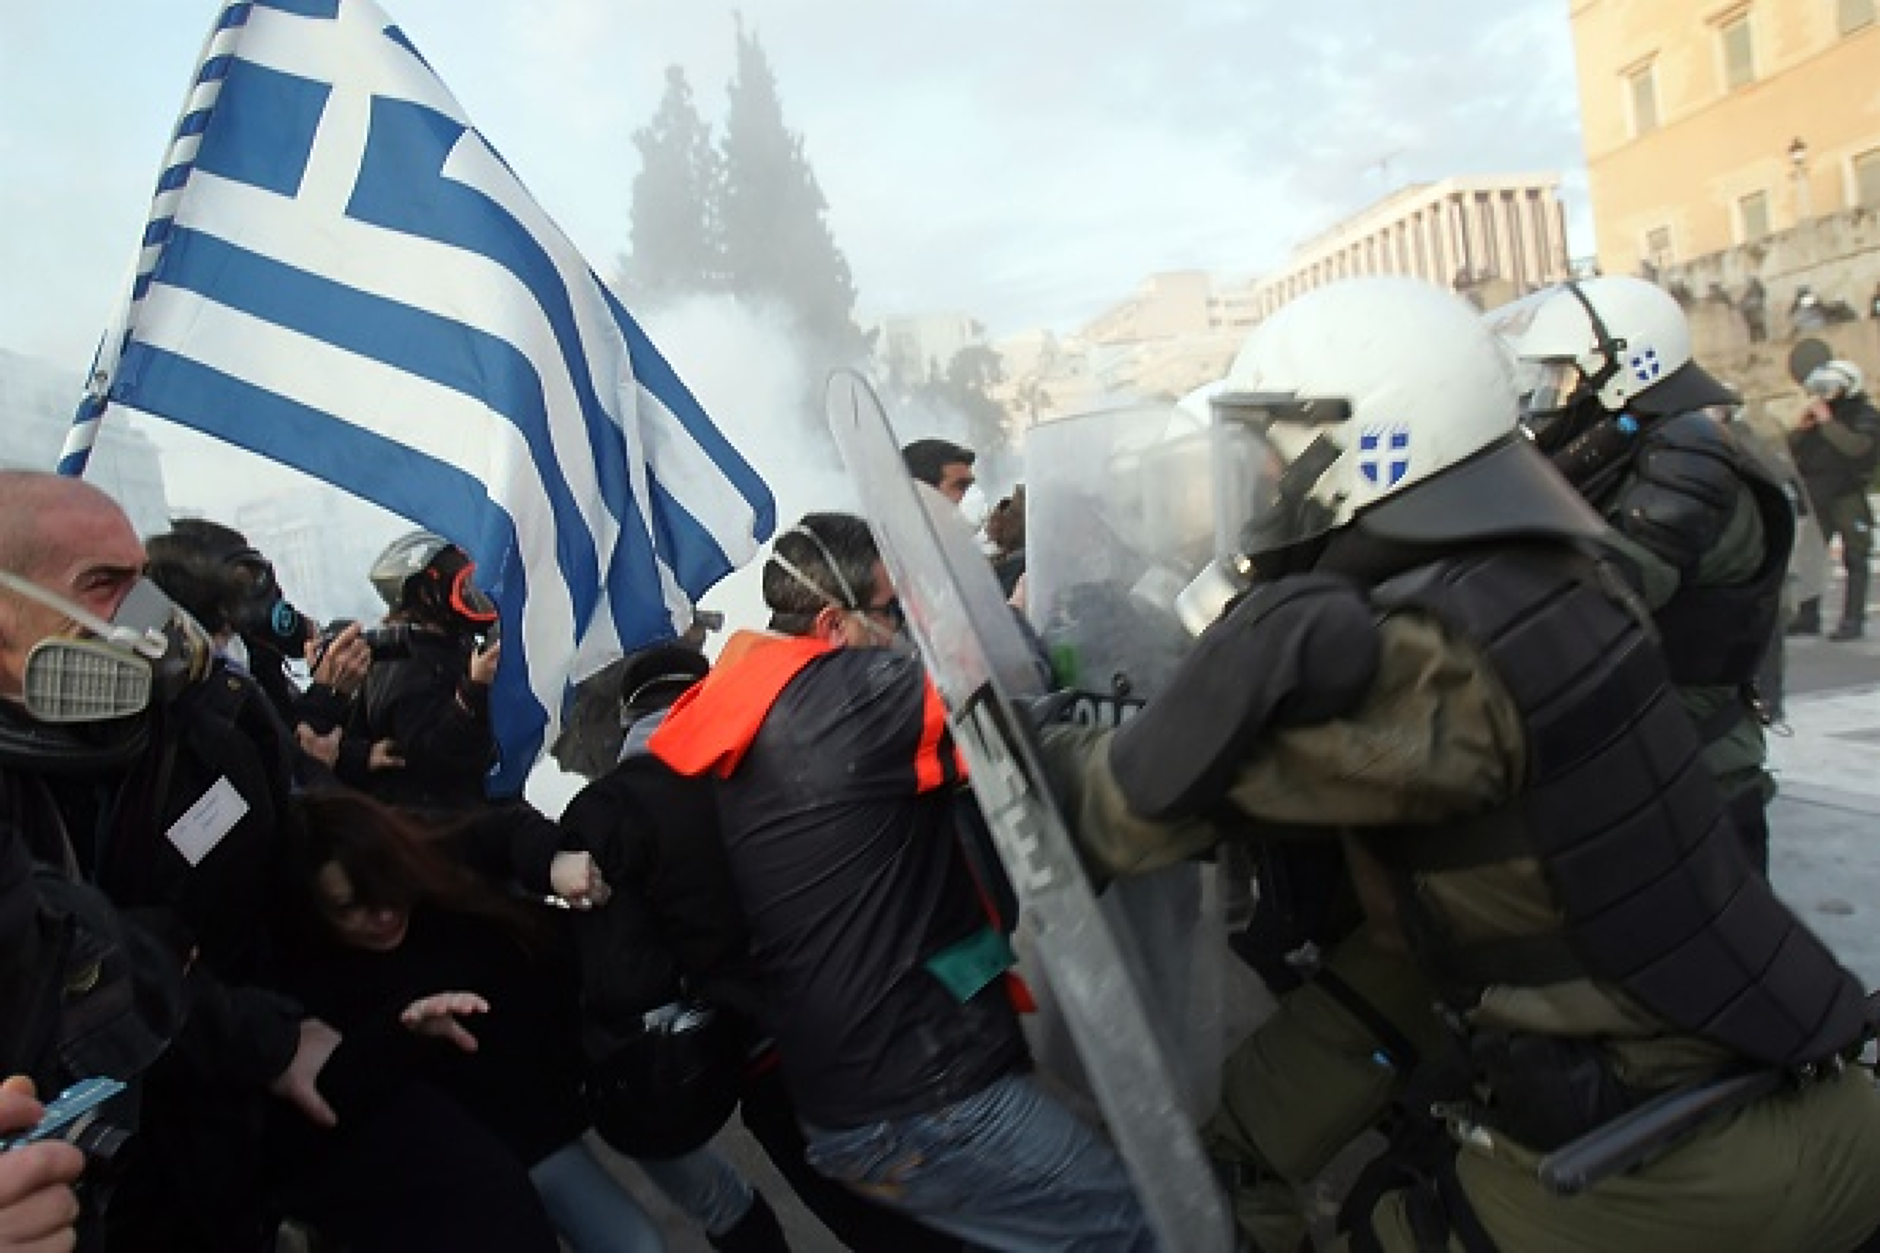 Гръцките медии спряха новинарските емисии, протести блокират страната срещу икономическата политика 